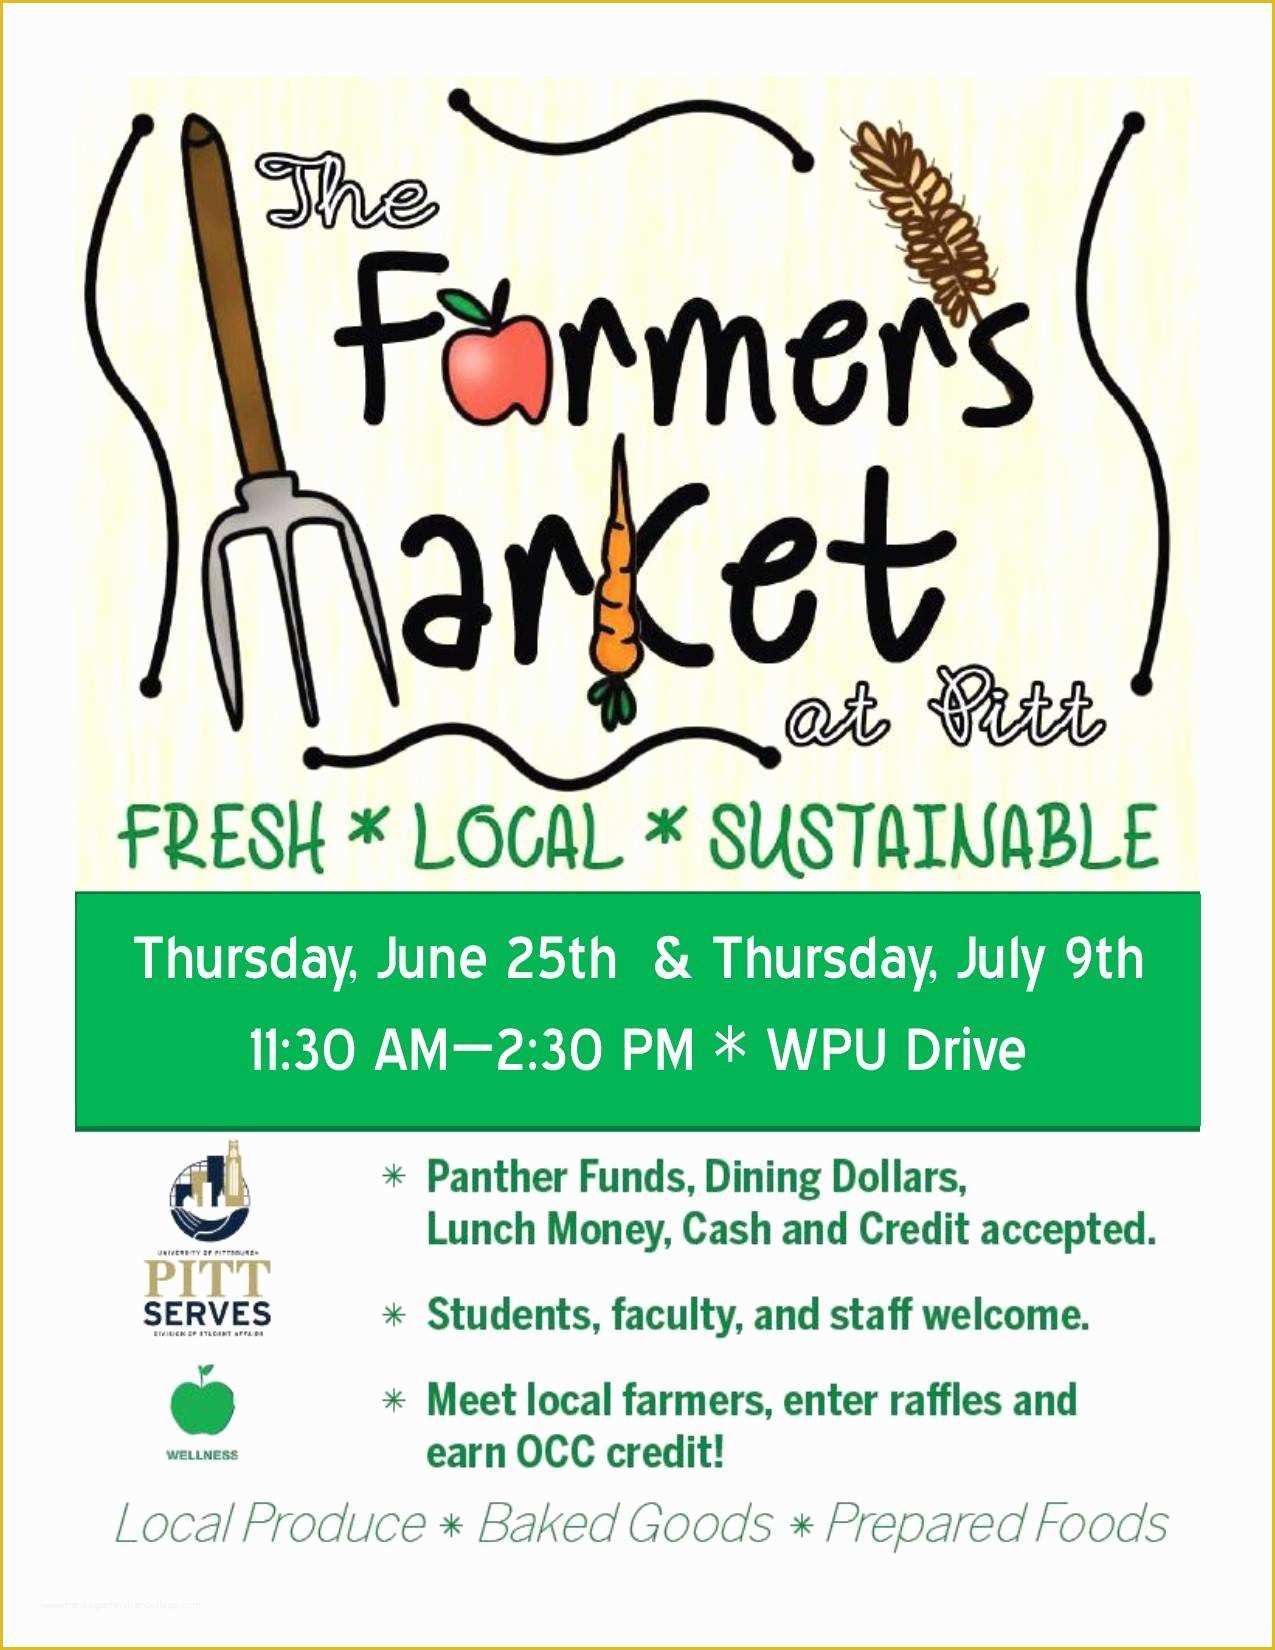 Farmers Market Flyer Template Free Of Pitt Farmers Market at William Pitt Union Thu 6 25 Thu 7